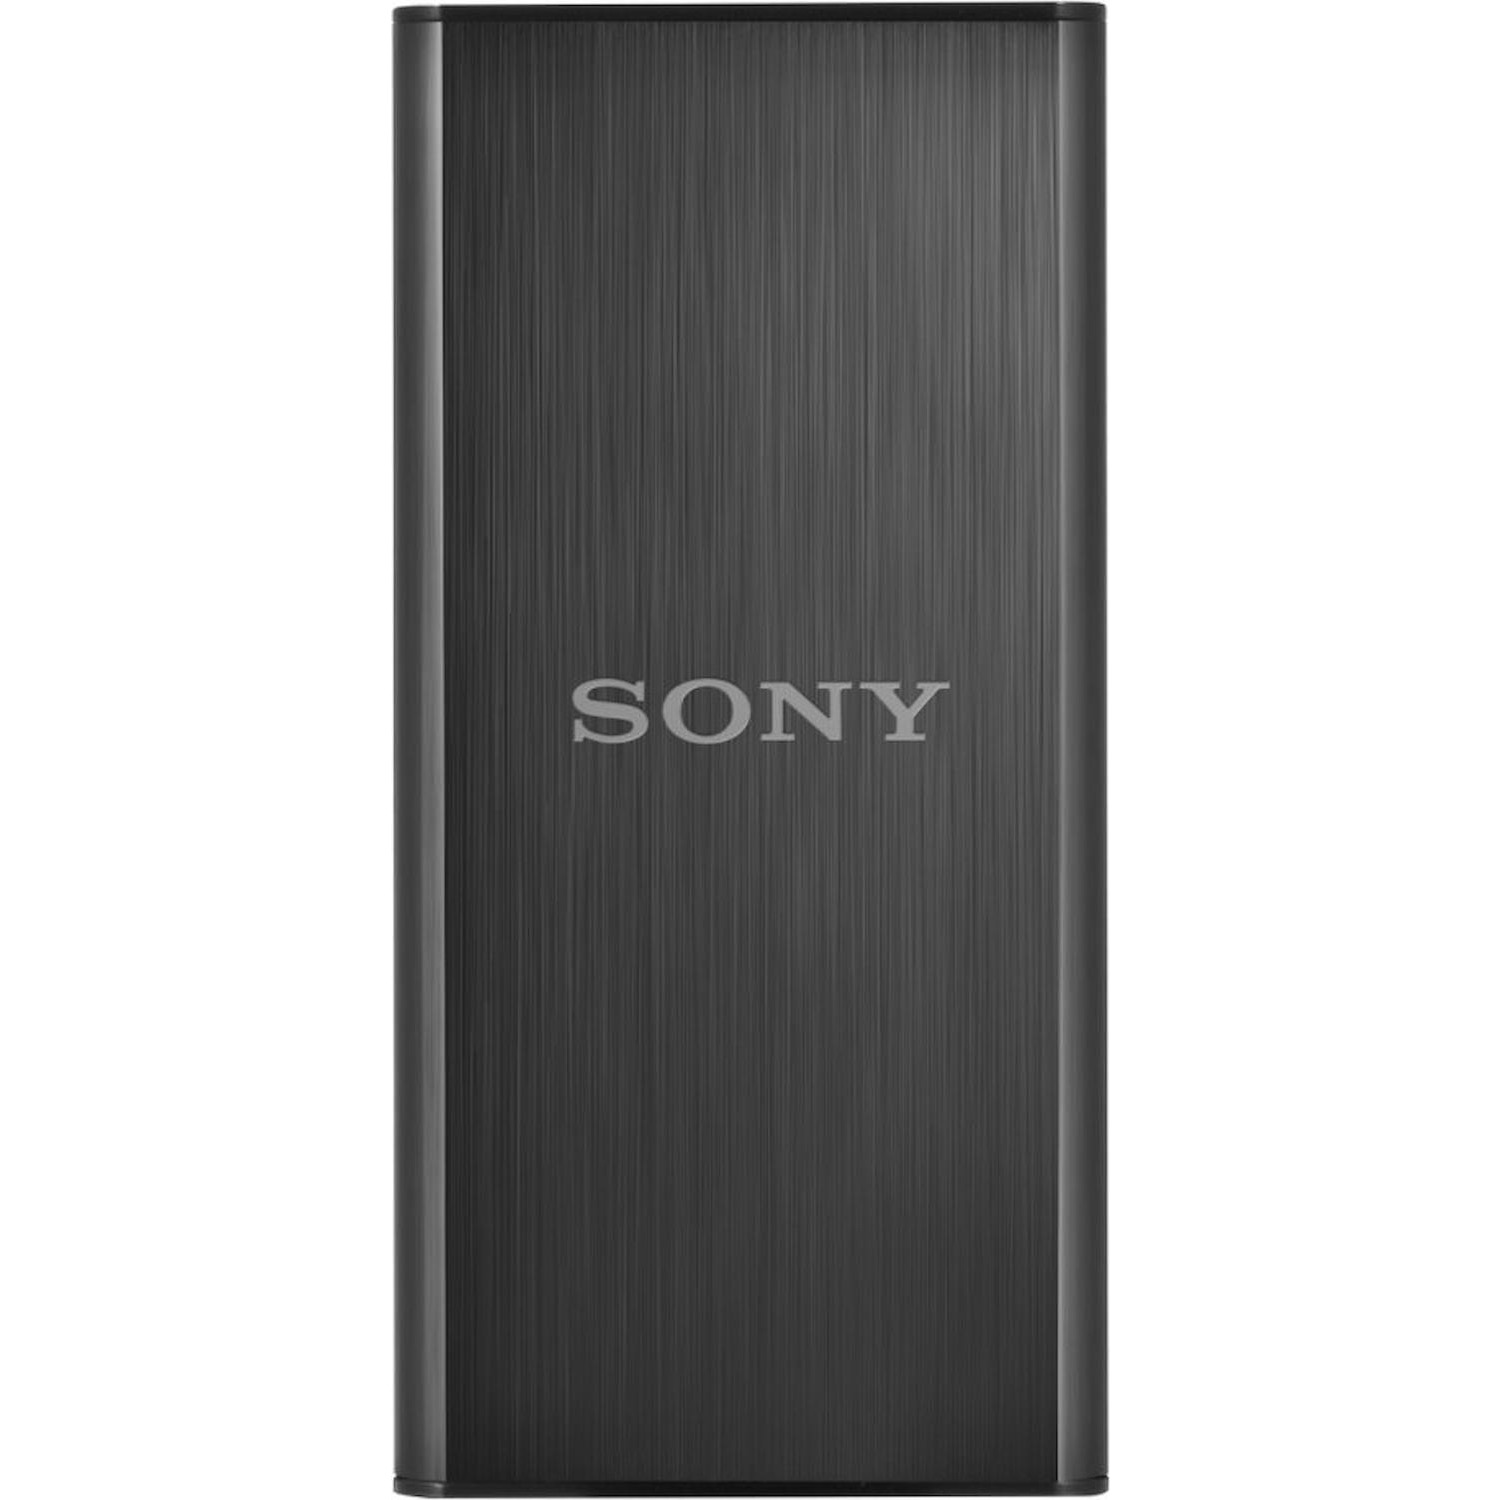 Immagine per HD SSD Sony 256GB esterno 3.0 nero da DIMOStore